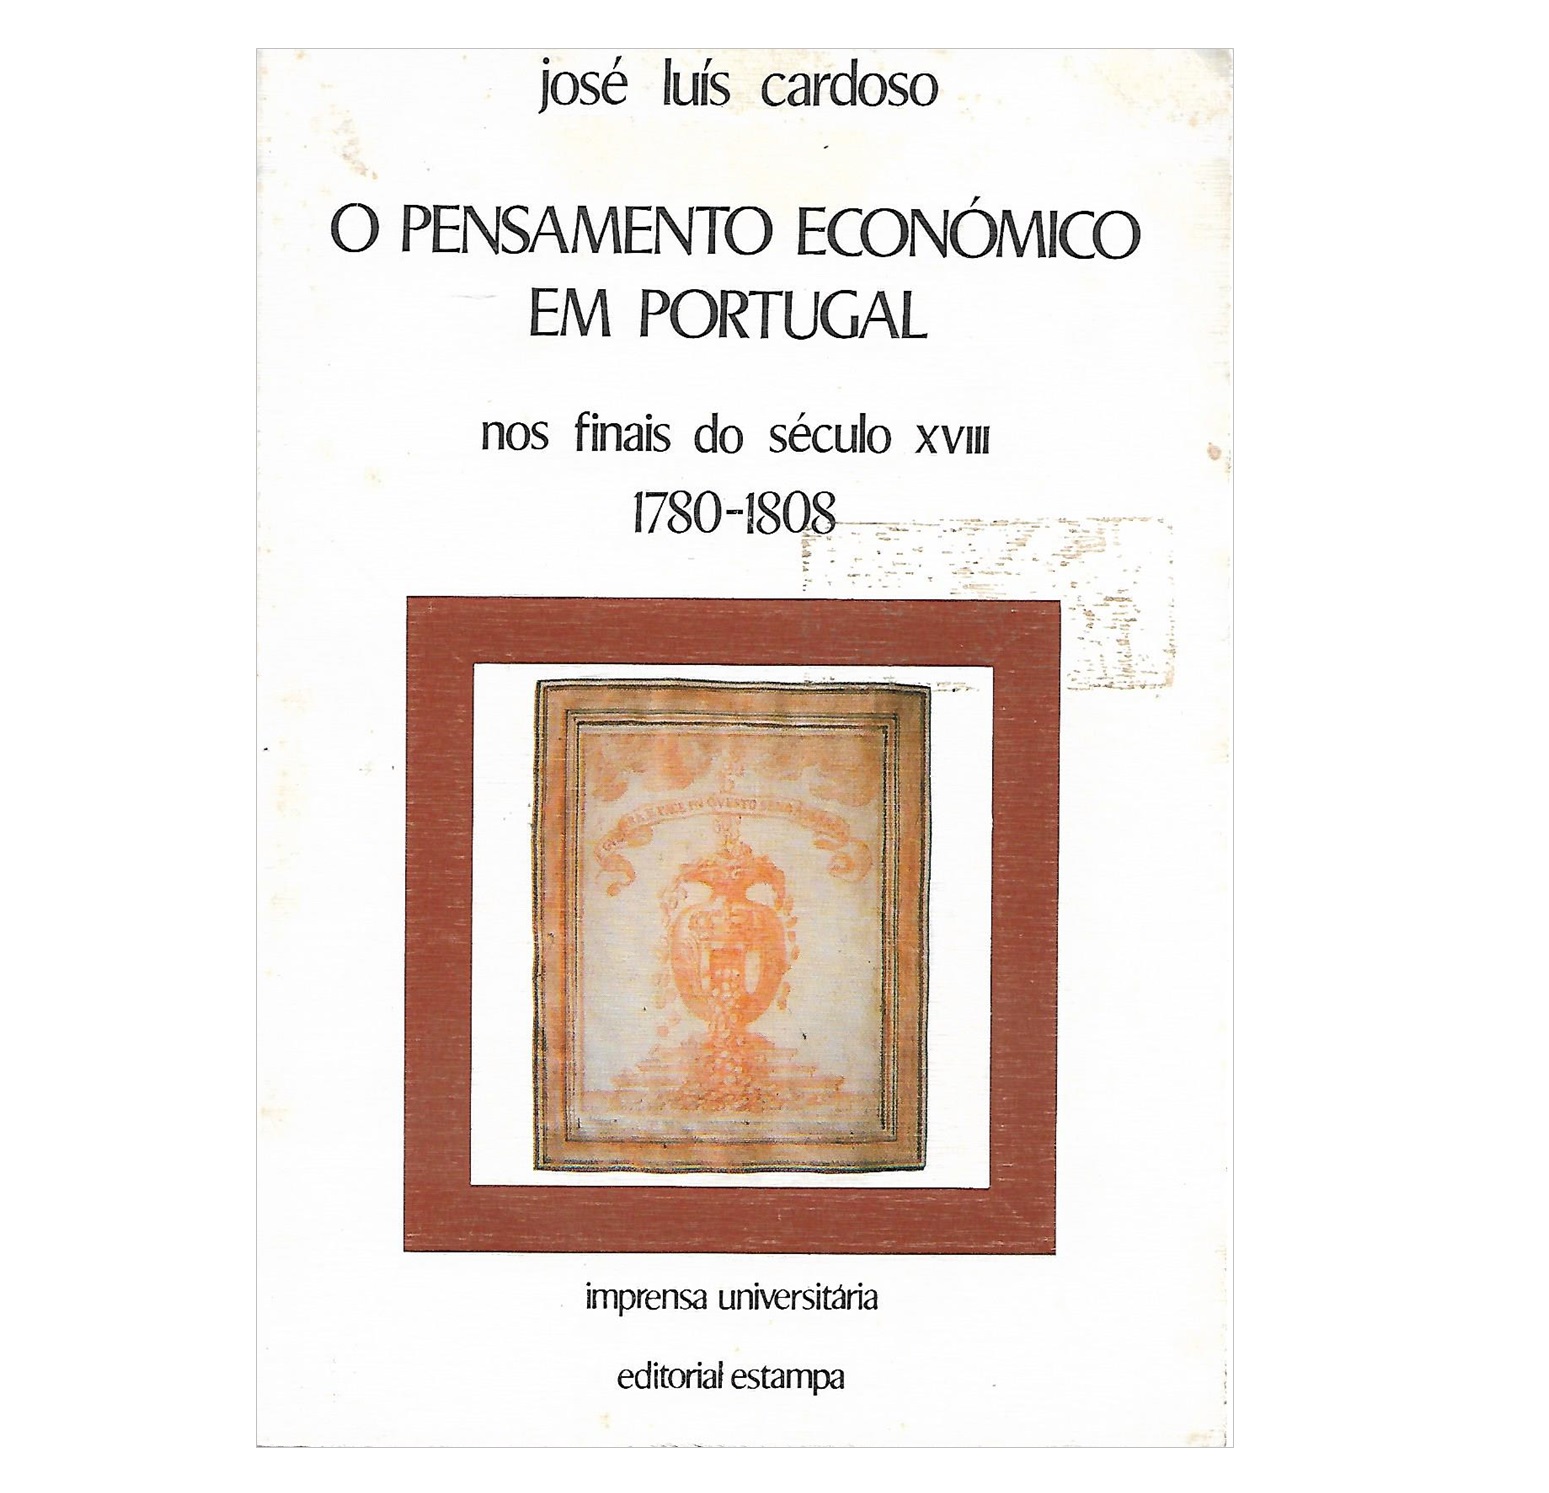  O PENSAMENTO ECONÓMICO EM PORTUGAL NOS FINAIS DO SÉCULO XVIII (1780-1808)